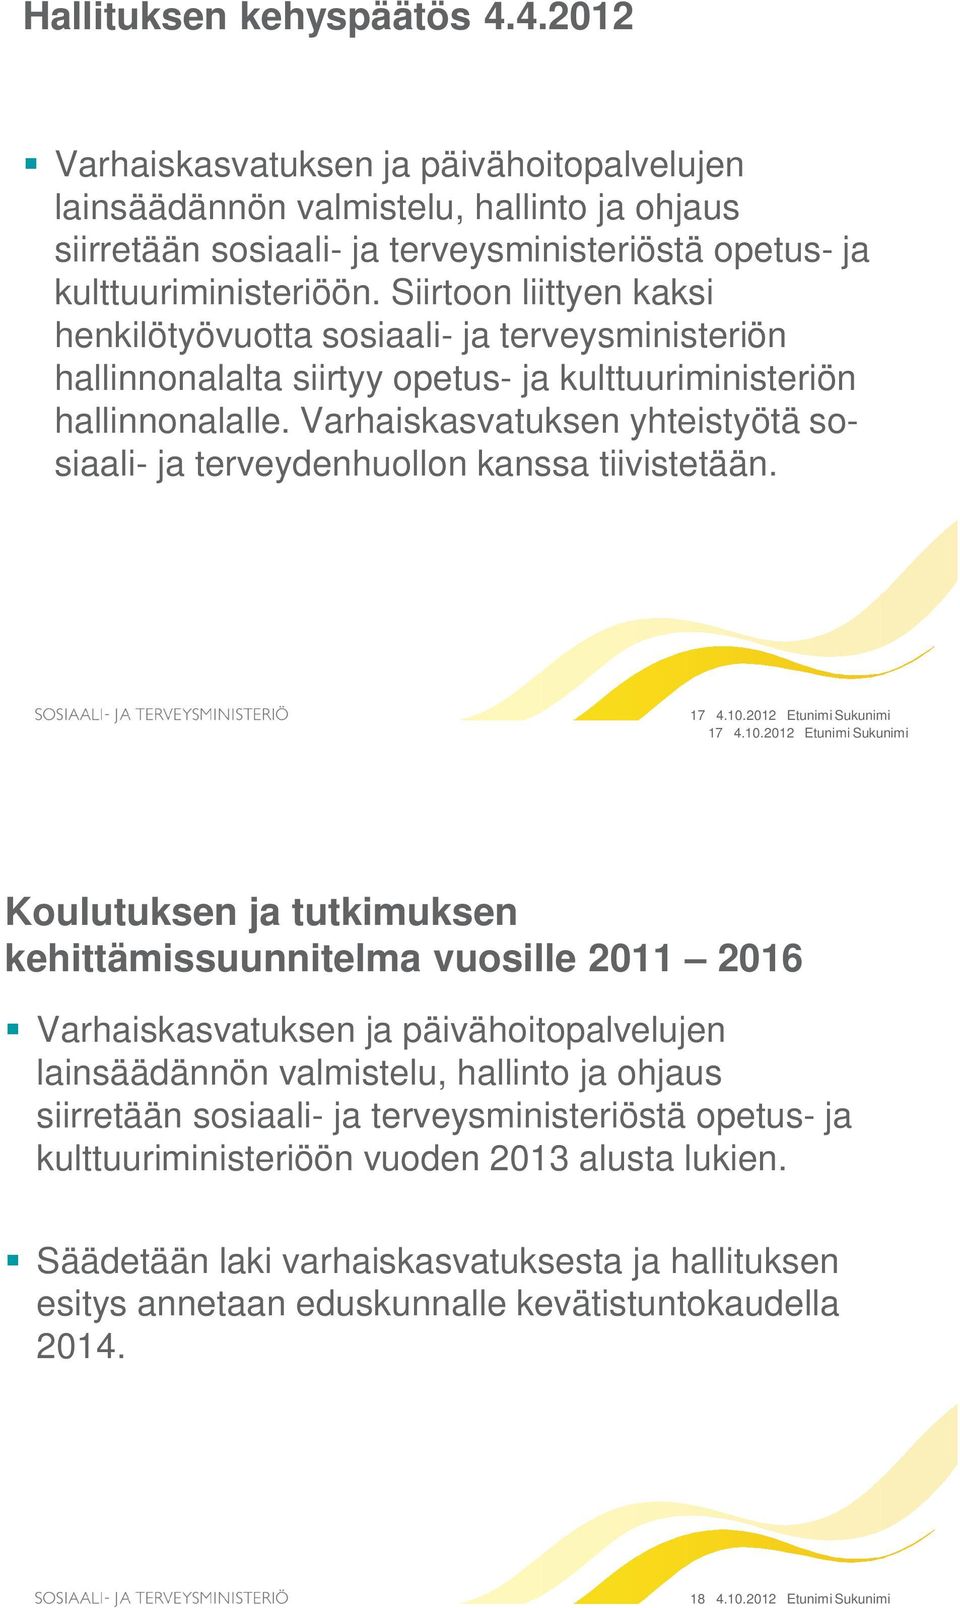 Varhaiskasvatuksen yhteistyötä sosiaali- ja terveydenhuollon kanssa tiivistetään. 17 4.10.